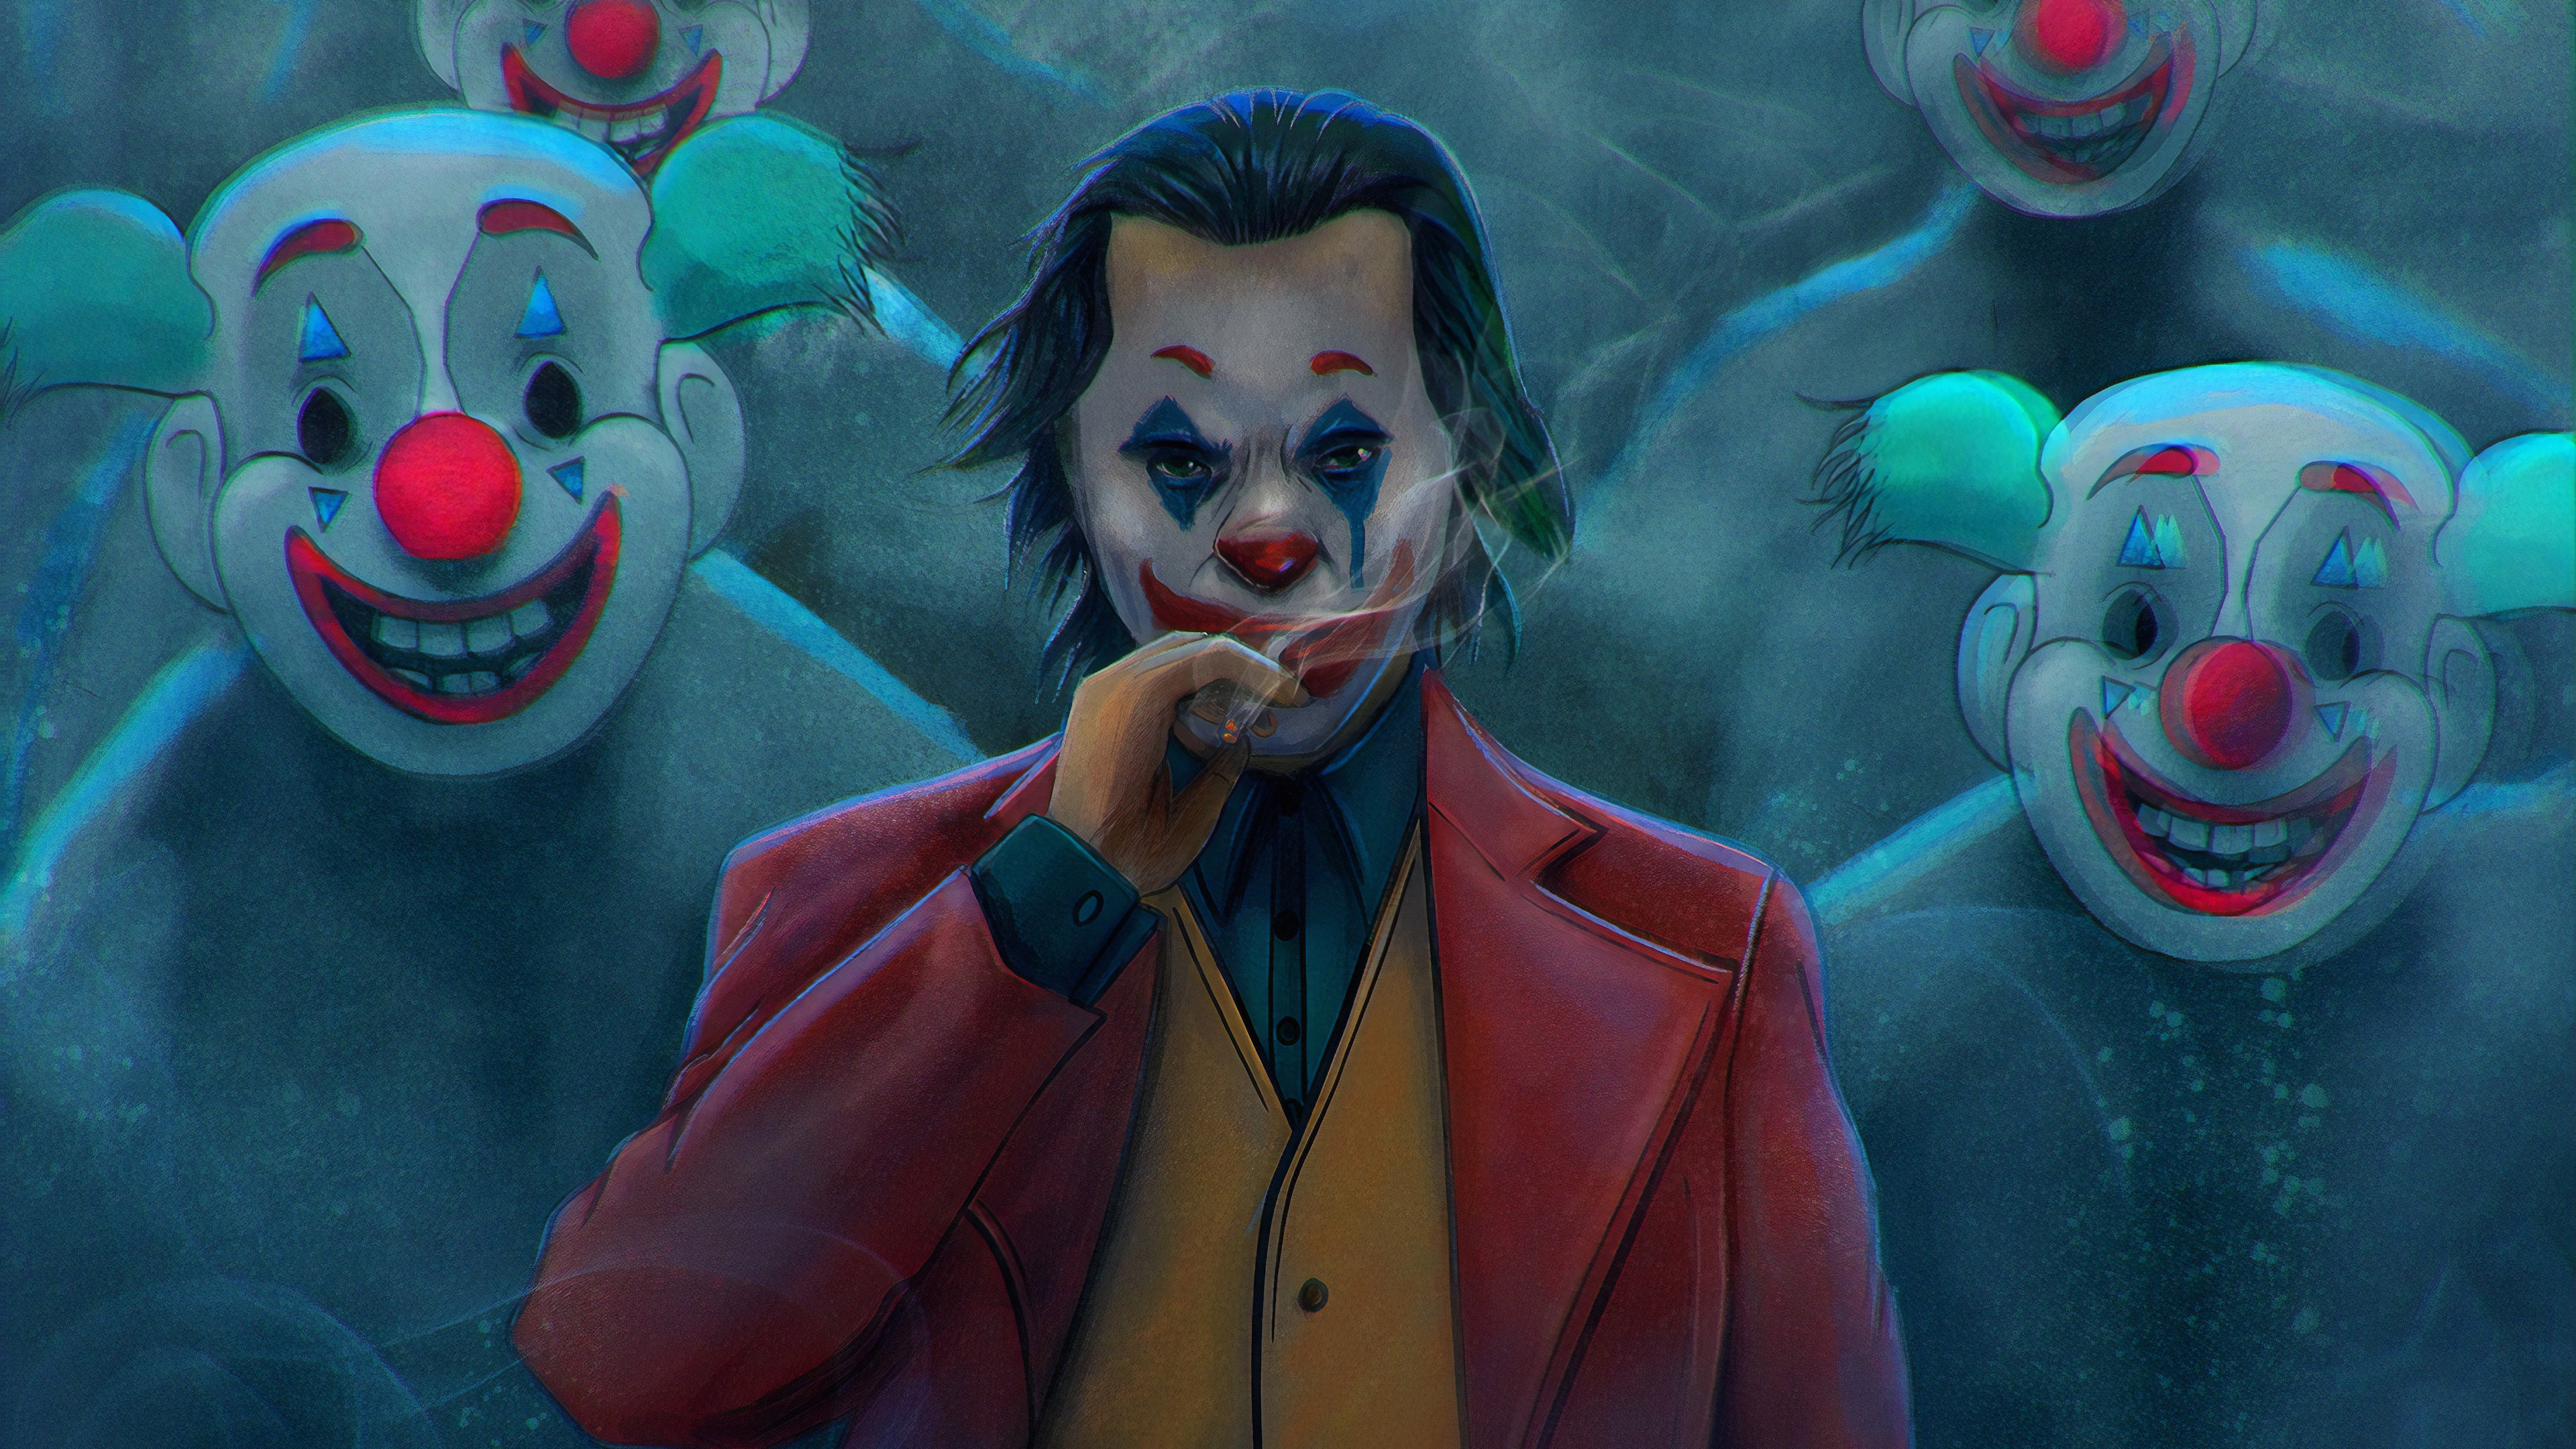 Clown Mask Joker 2019 - HD Wallpaper 